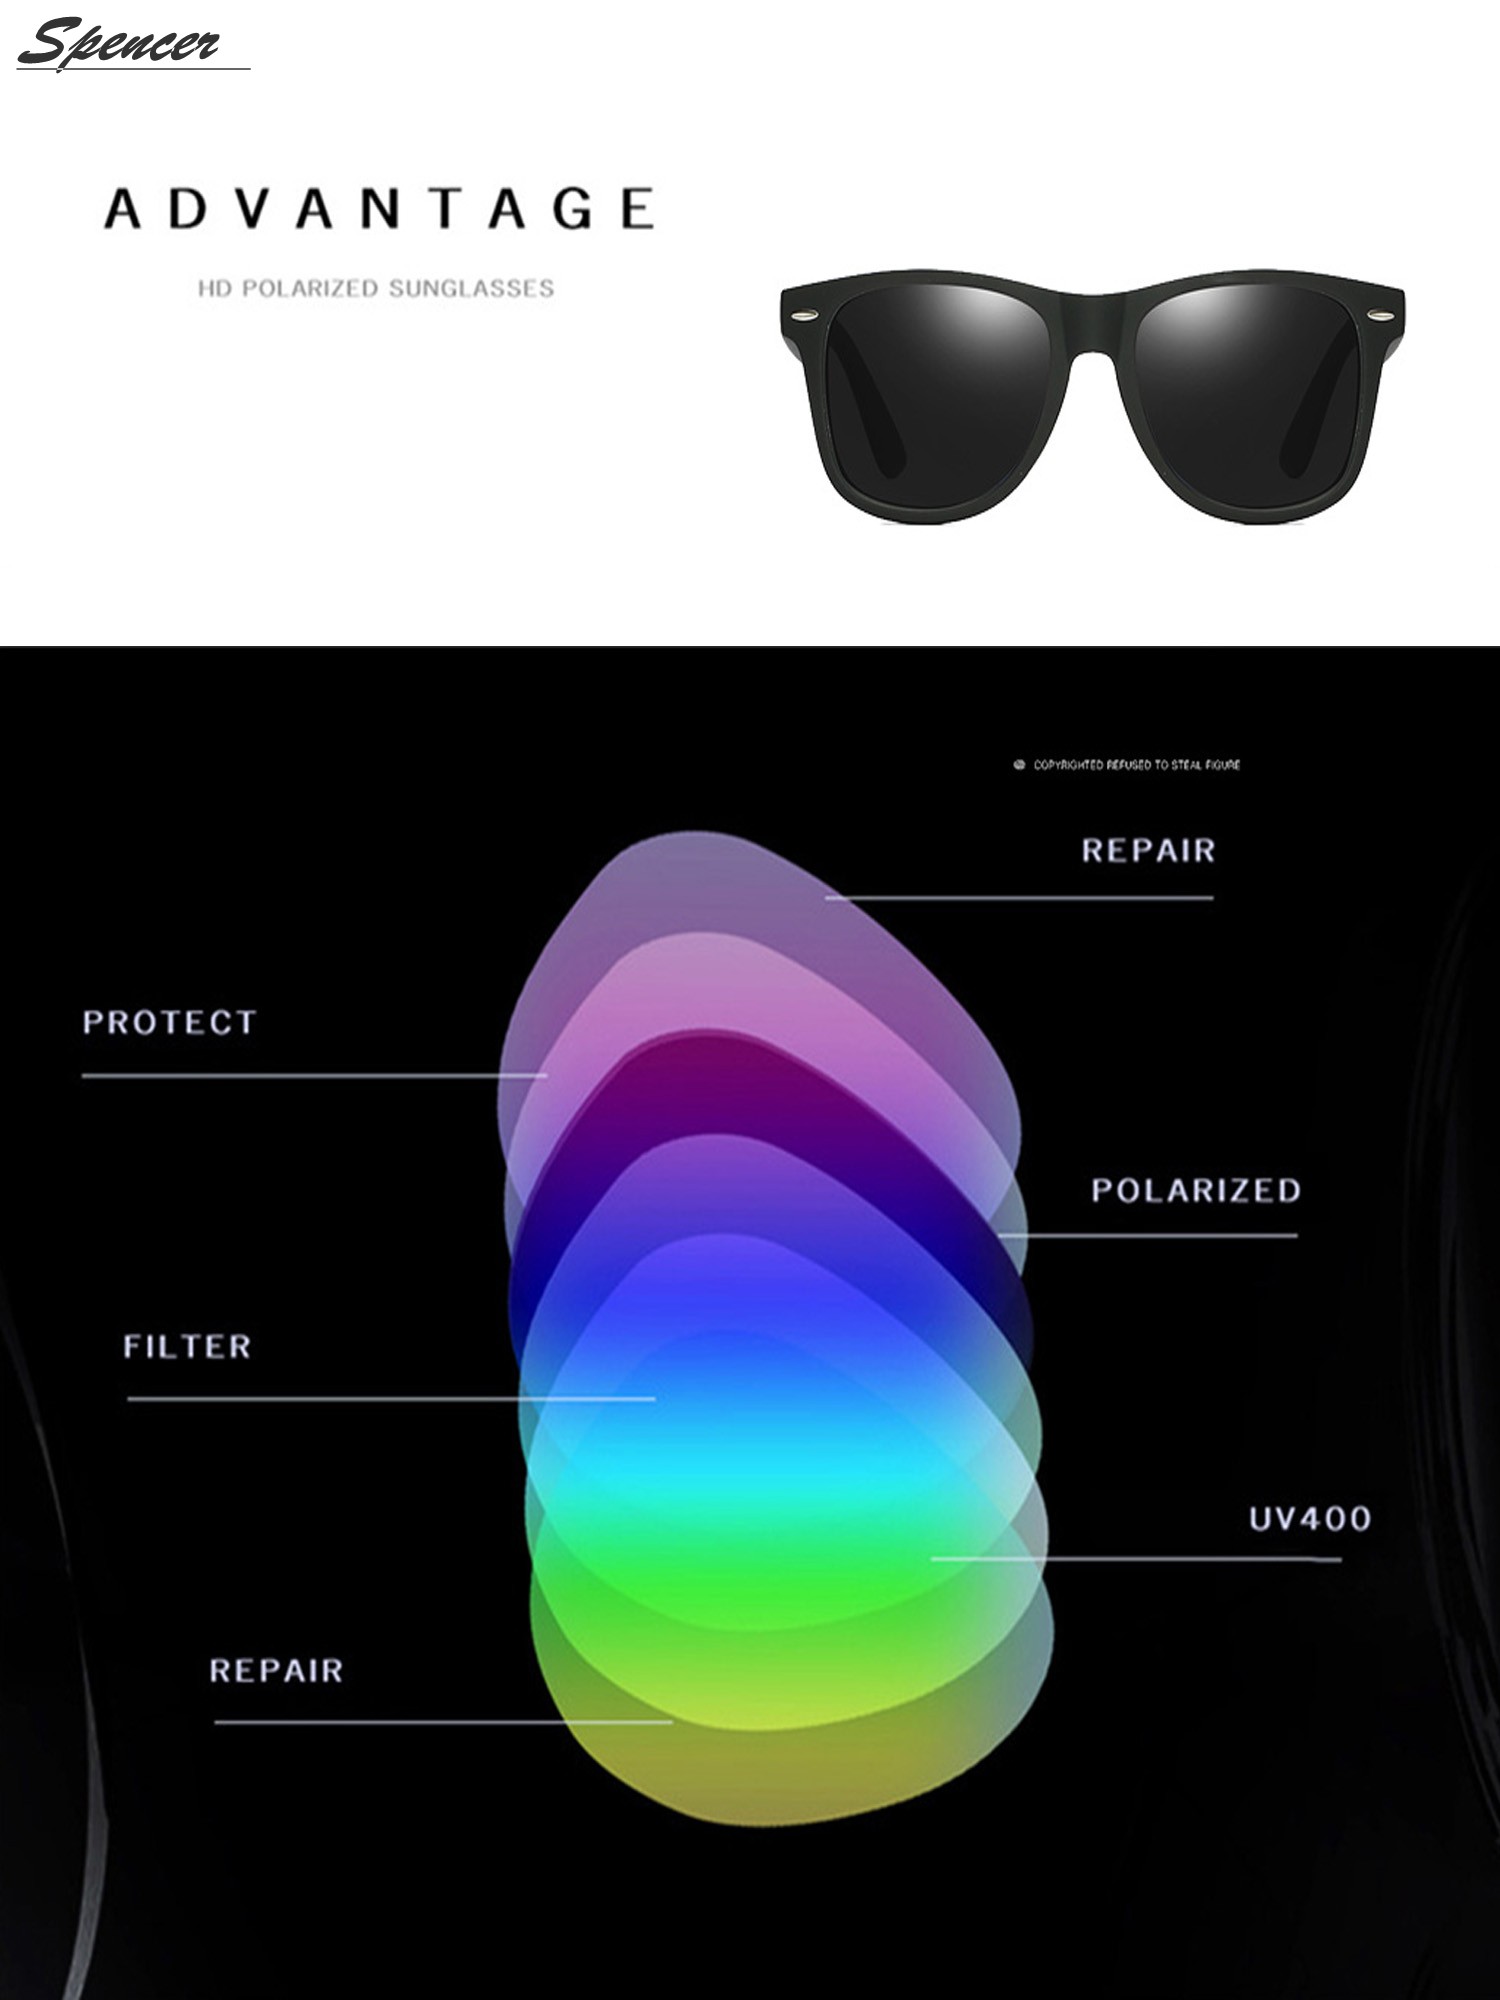 Spencer Retro HD Polarized Colored Mirrored Lens Sunglasses Ultralight Driving UV400 Eyewear Glasses for Men Women "Black+Gray " - image 5 of 6